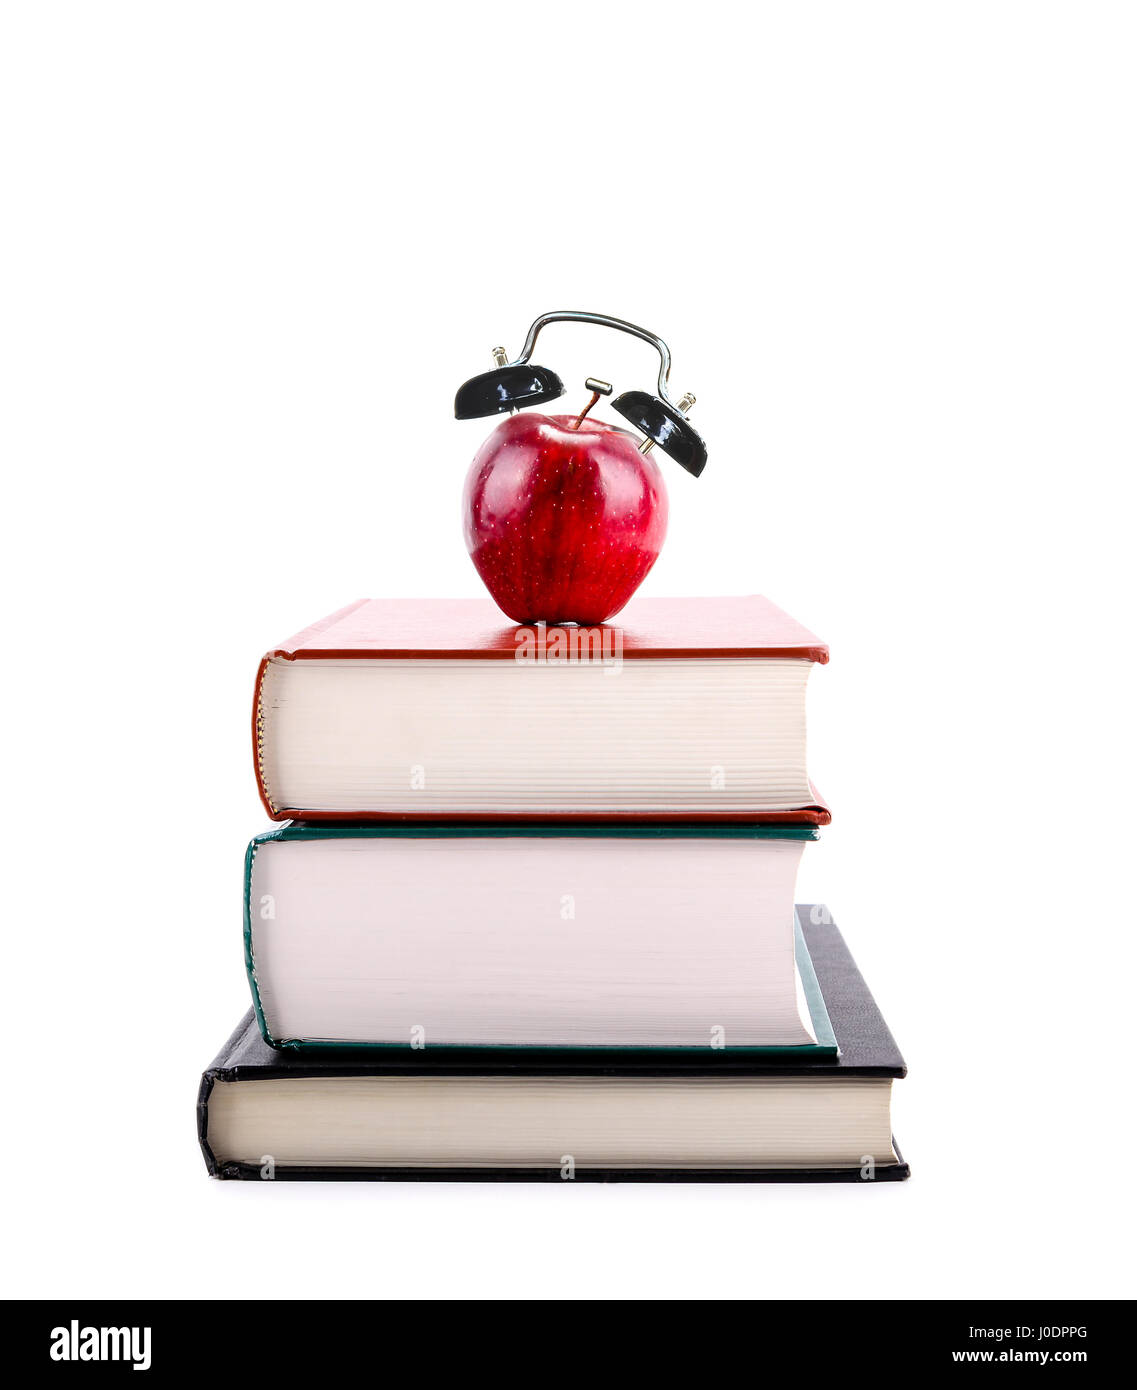 Une pomme rouge avec alarme sur une pile de livres isolé sur fond blanc. Le temps de retourner à l'école, conception de l'apprentissage, l'enseignement, l'alphabétisation. Banque D'Images